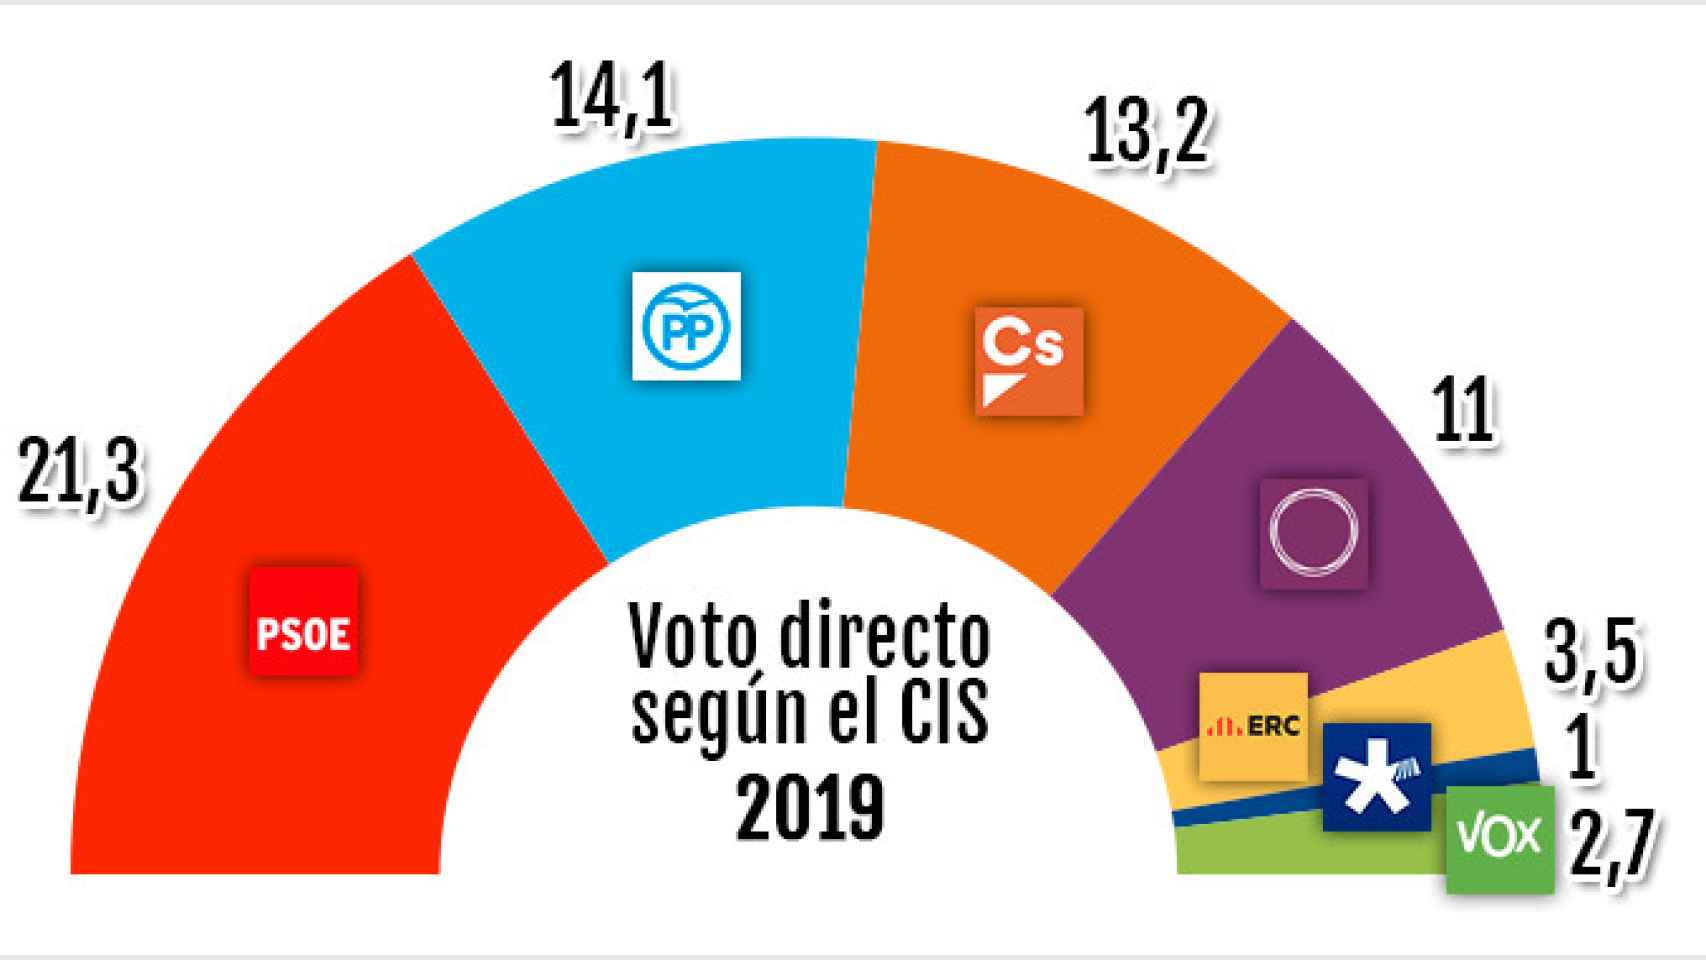 Voto directo según el CIS, enero 2019 / CG